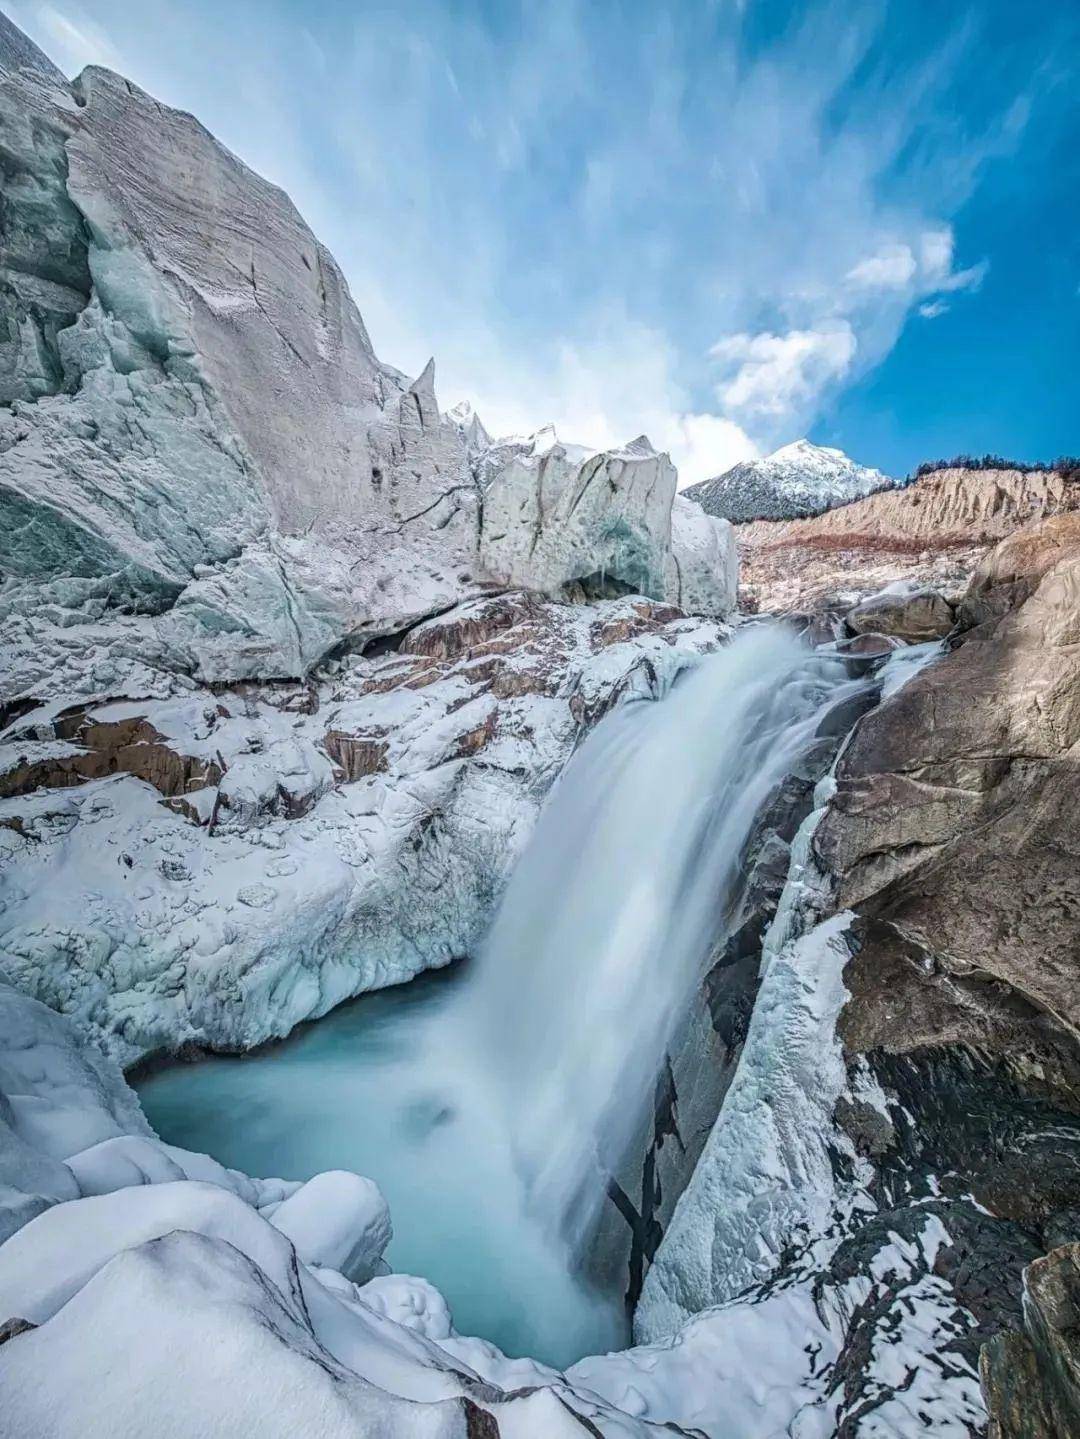 依嘎冰川是由雪山,冰川,多级流水飞瀑相互影响动静结合成的地质地貌